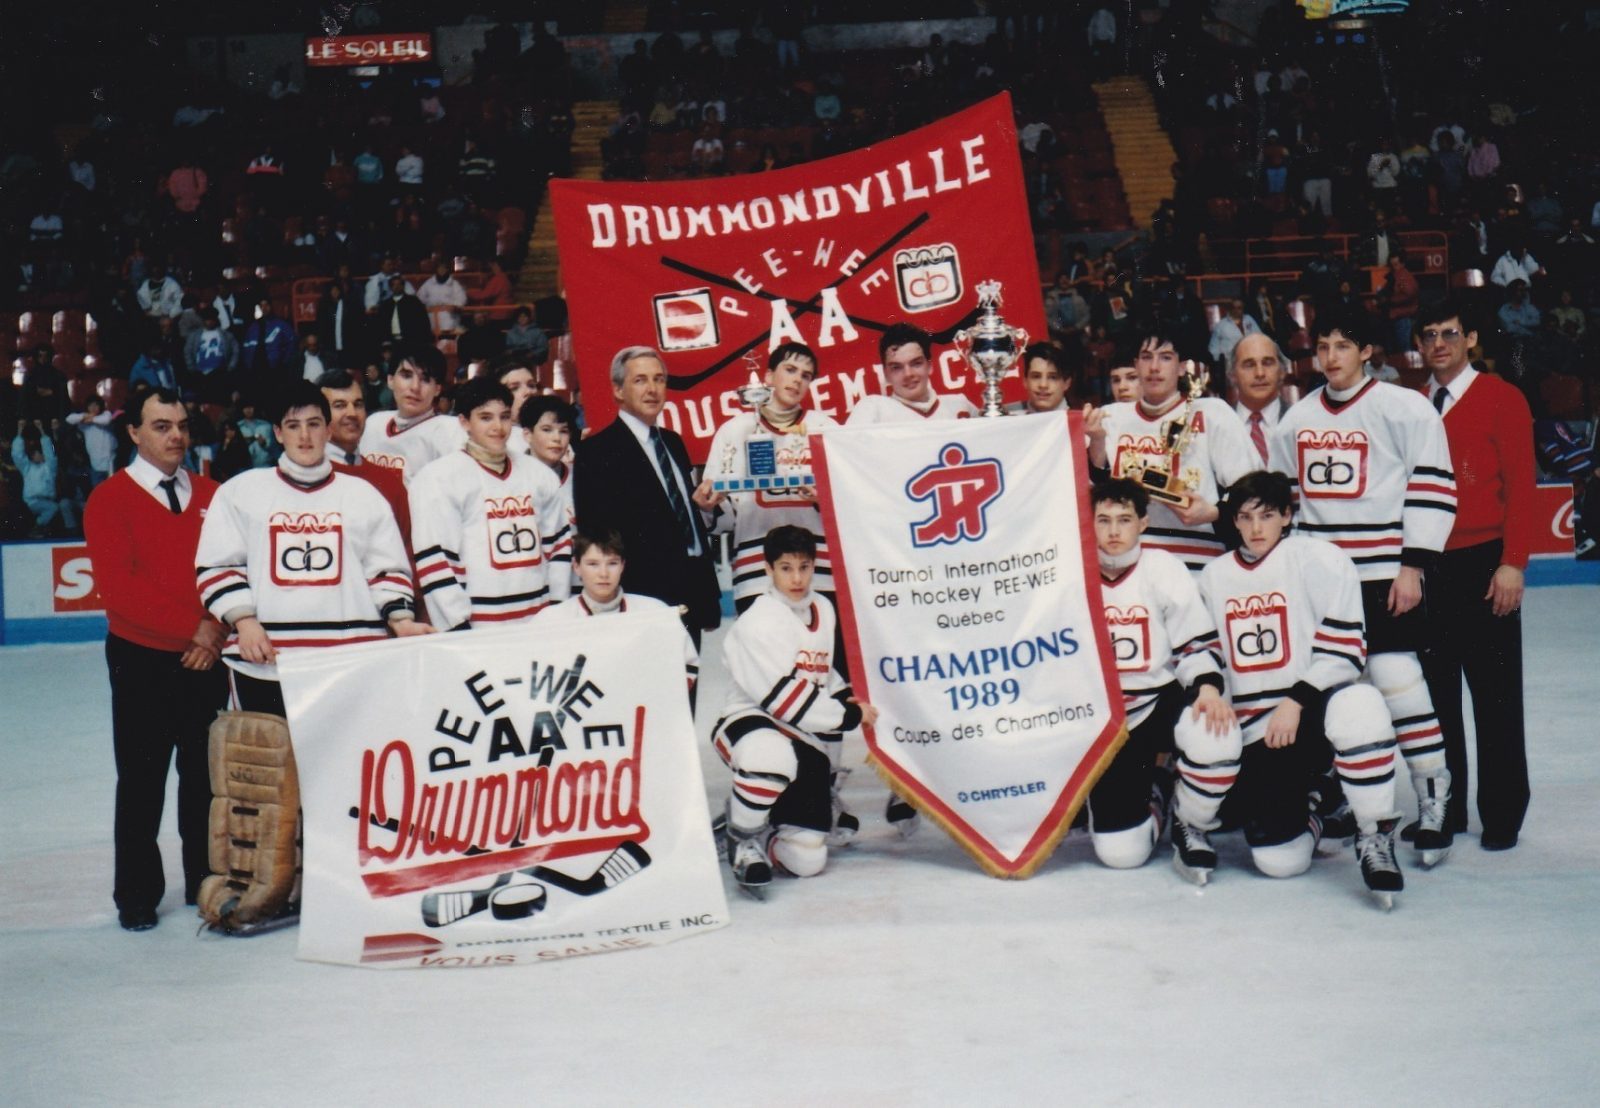 Drummondville, première ville gagnante de la coupe des Champions